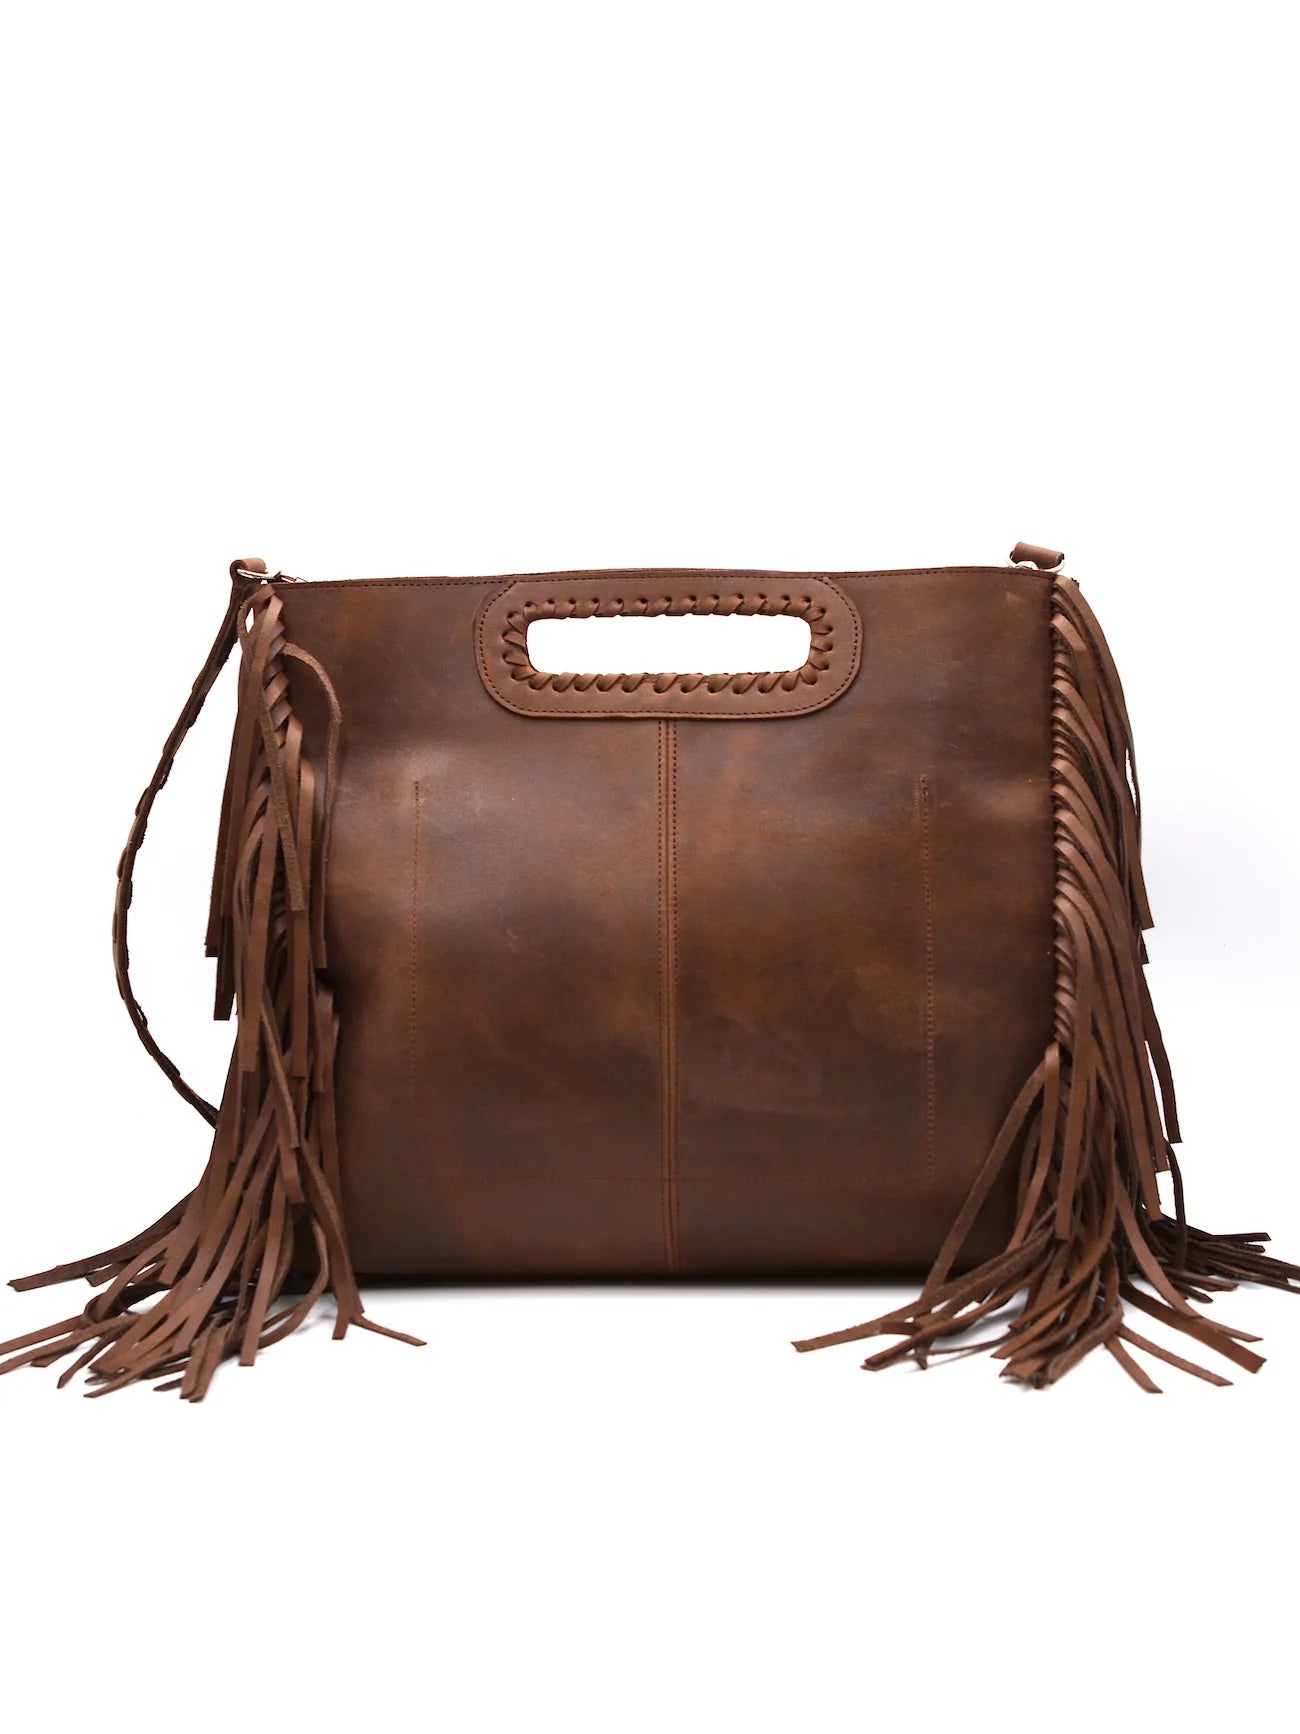 The Argentine Leather Fringe Large Handbag